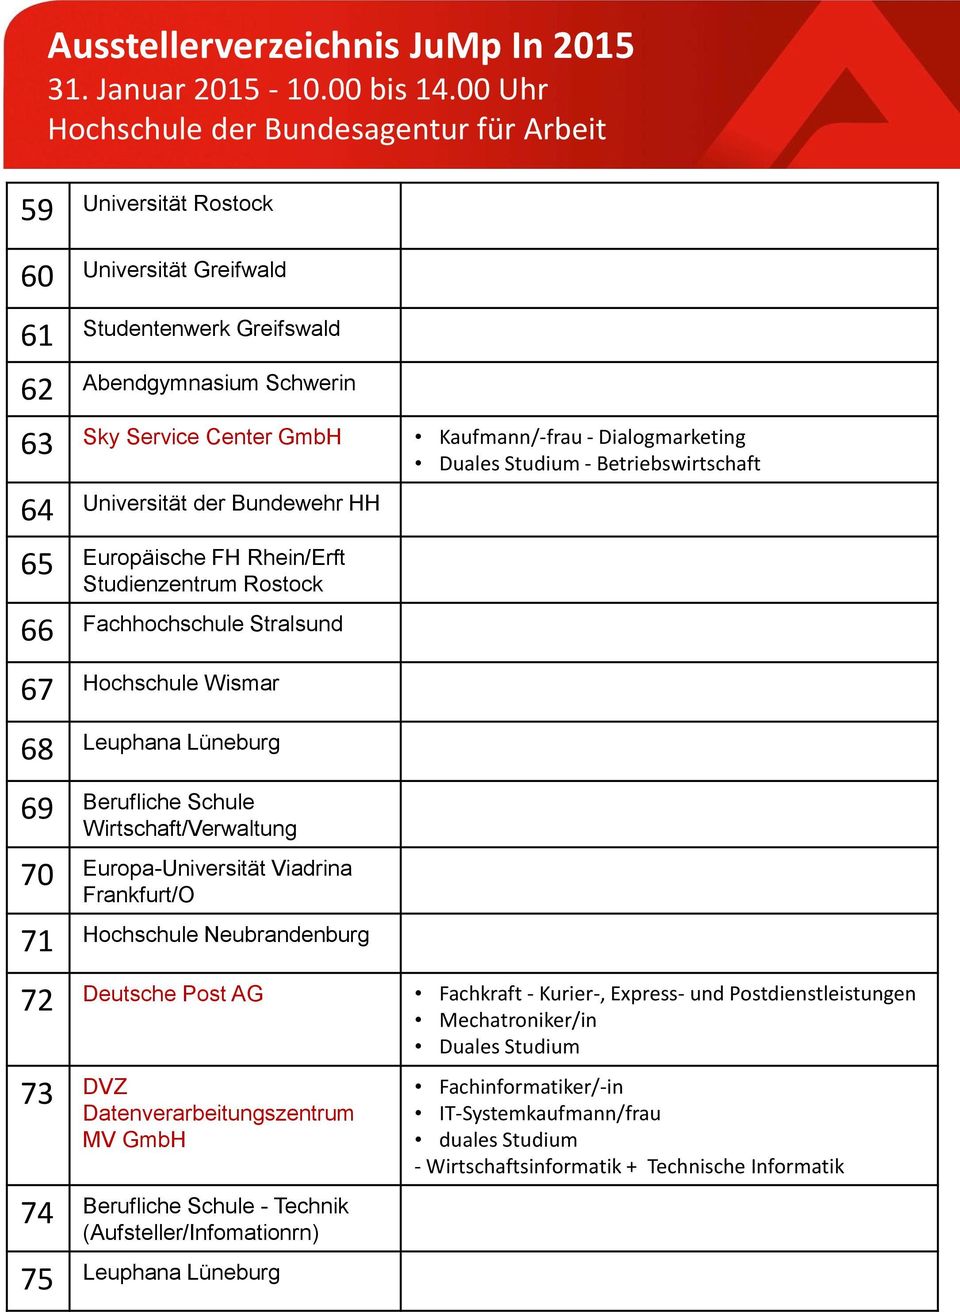 Wirtschaft/Verwaltung 70 Europa-Universität Viadrina Frankfurt/O 71 Hochschule Neubrandenburg 72 Deutsche Post AG Fachkraft - Kurier-, Express- und Postdienstleistungen Duales Studium 73 DVZ